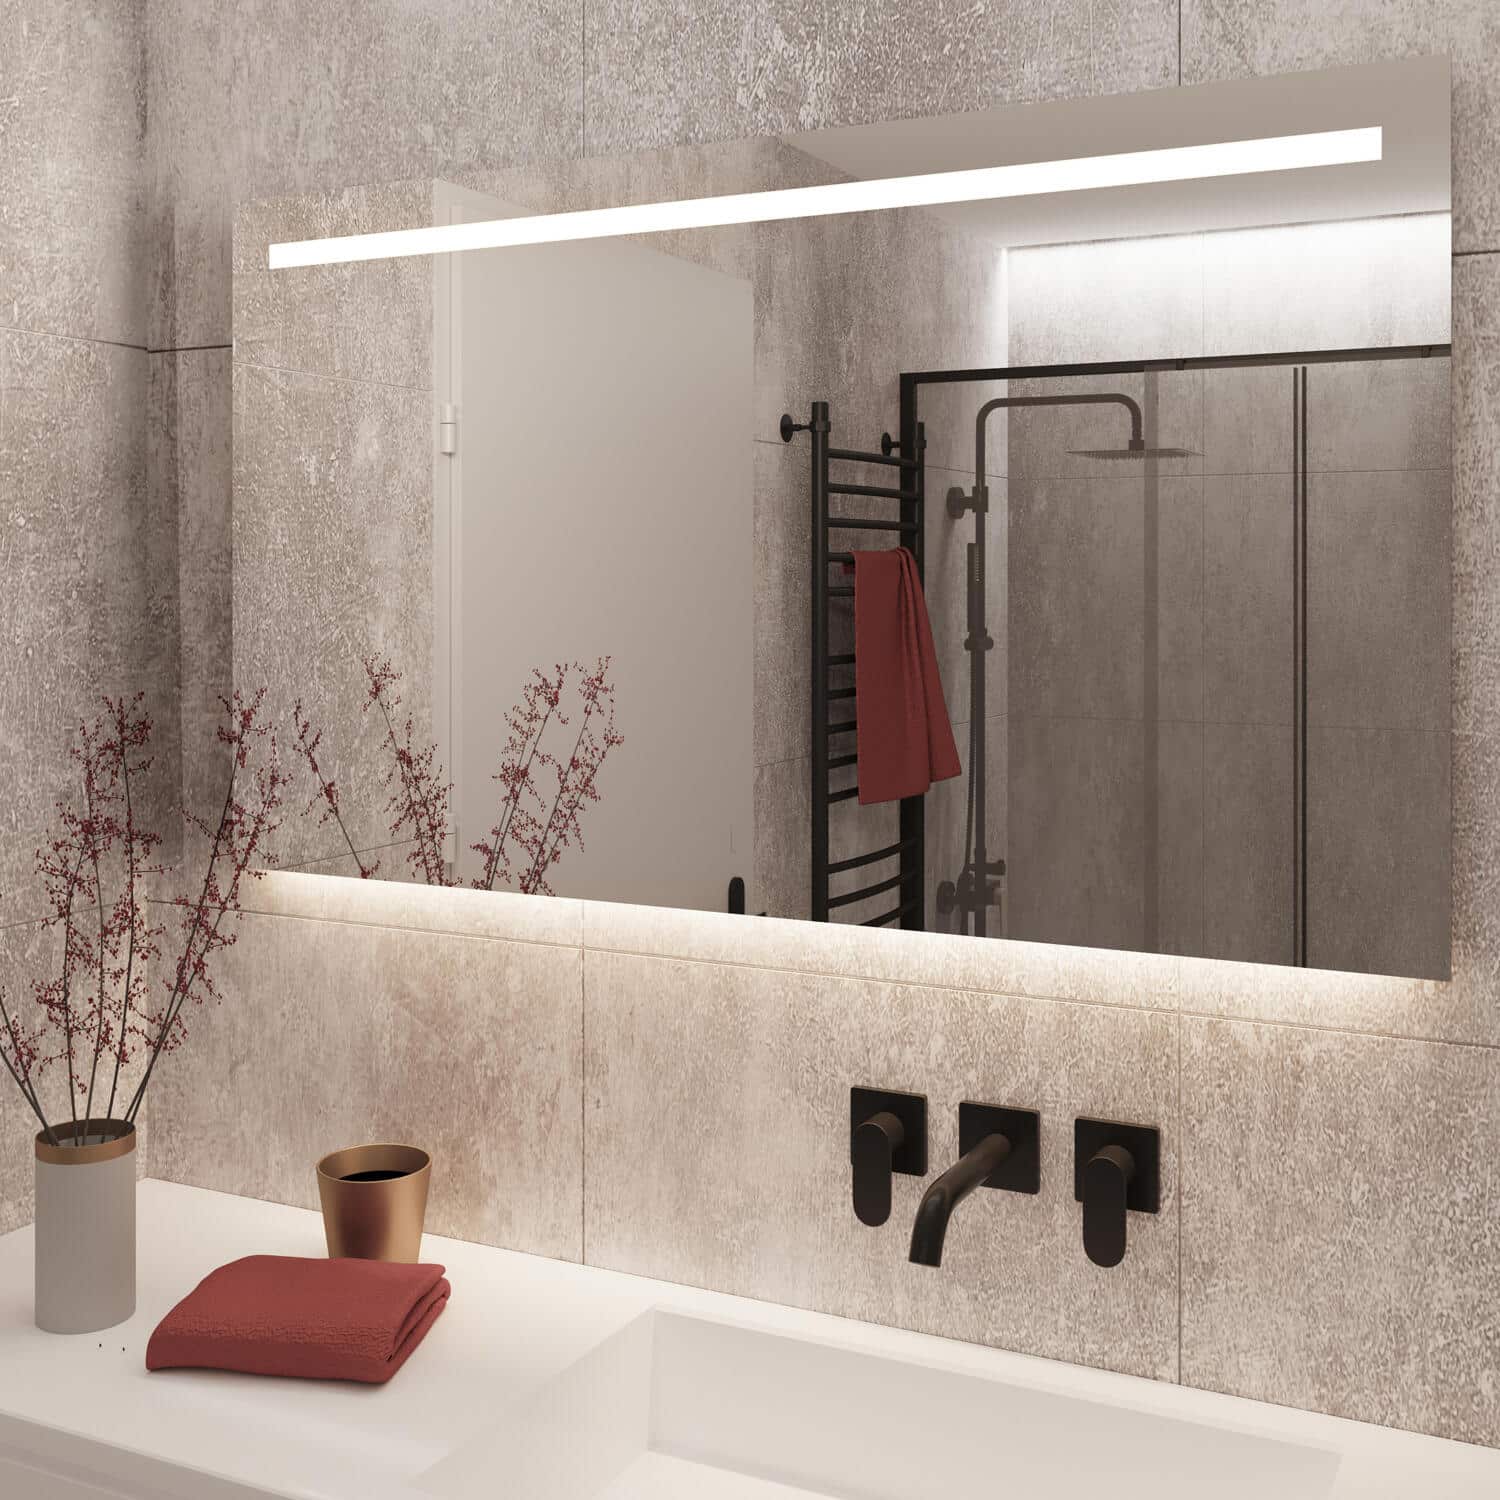 Deze stijlvolle badkamer spiegel is 120 cm breed, 70 cm hoog en slechts 3 cm diep